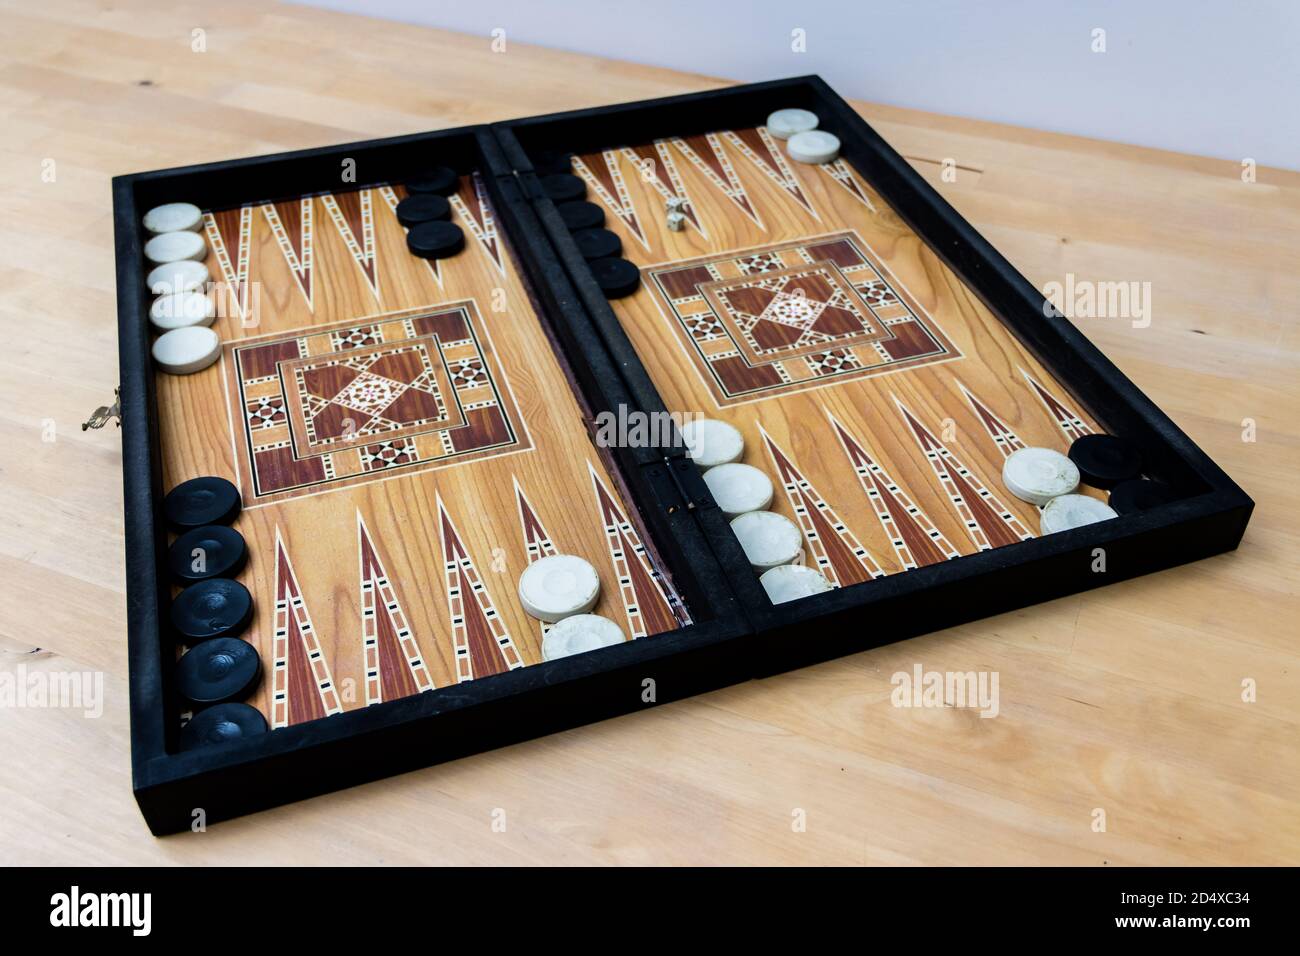 Backgammon set on wooden table Stock Photo